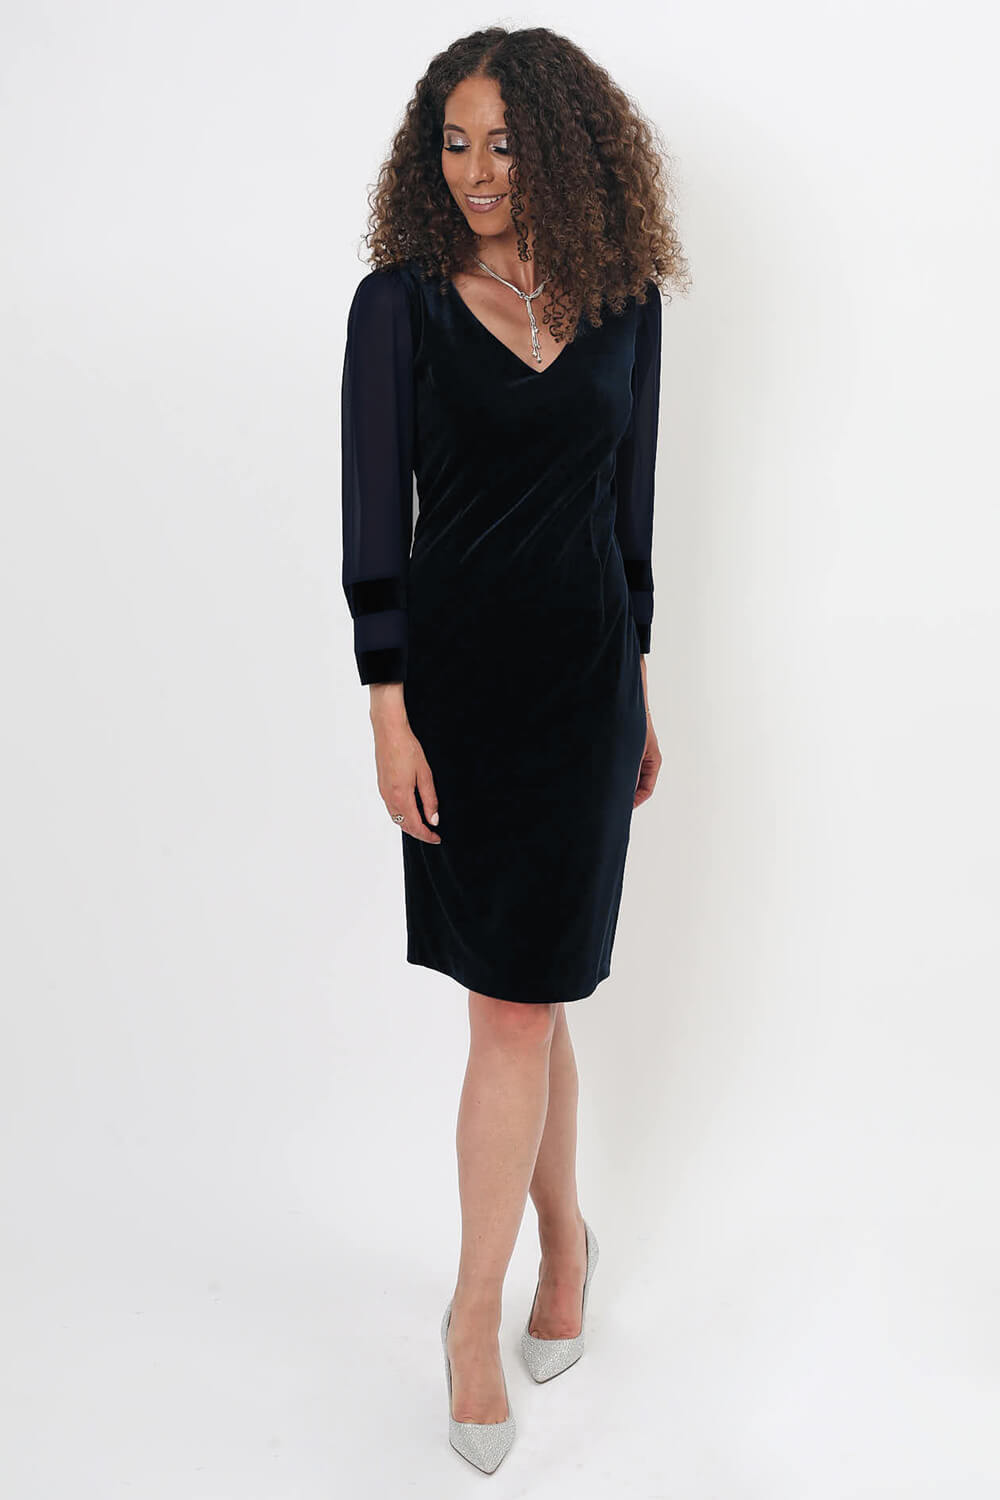 Black Julianna V-Neck Velour Shift Dress, Image 3 of 4